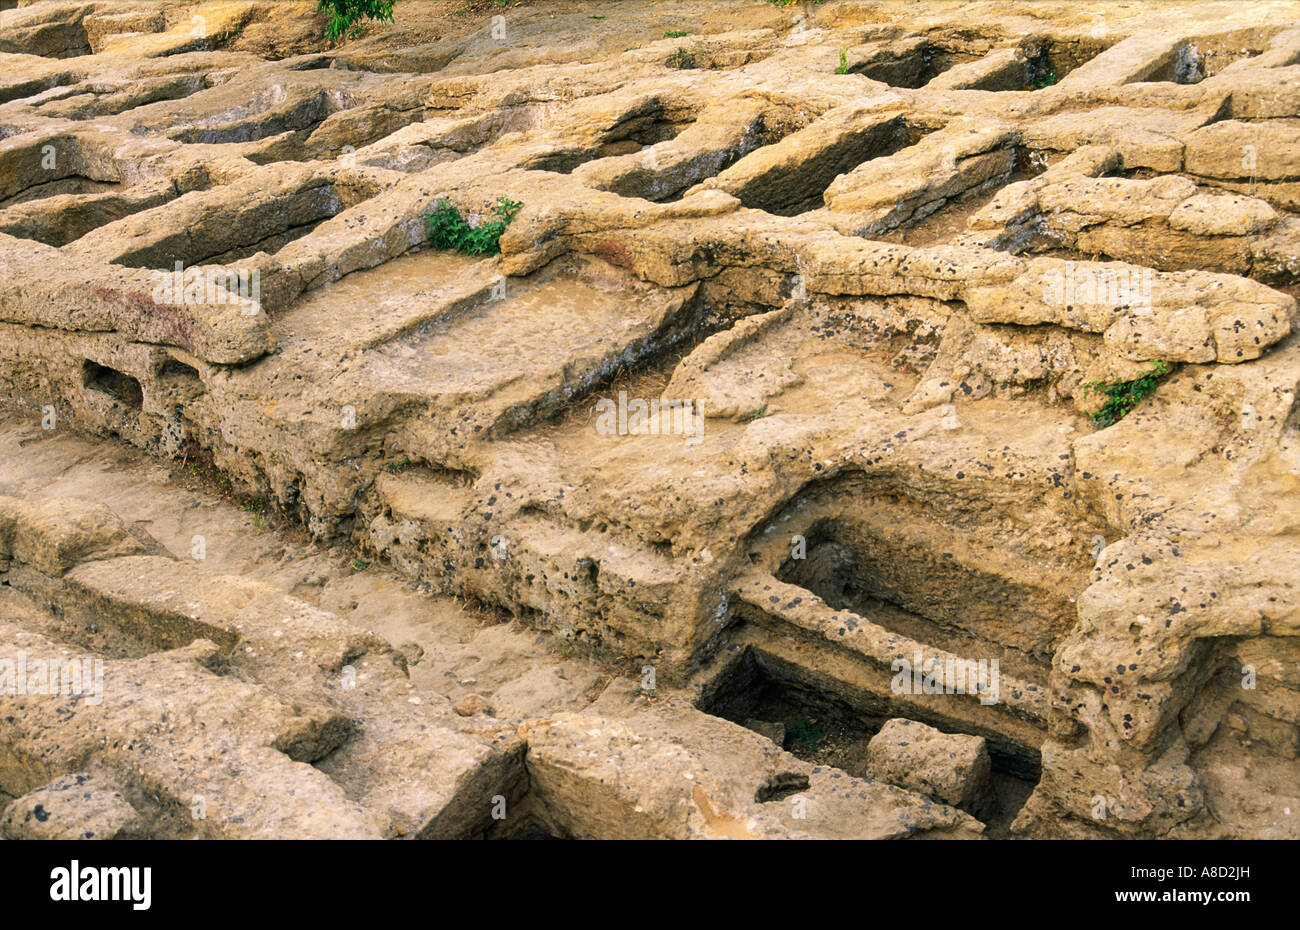 Valle de los templos en el griego antiguo sitio de Agrigento. Necrópolis romana grave entierros. Sicilia, Italia Foto de stock